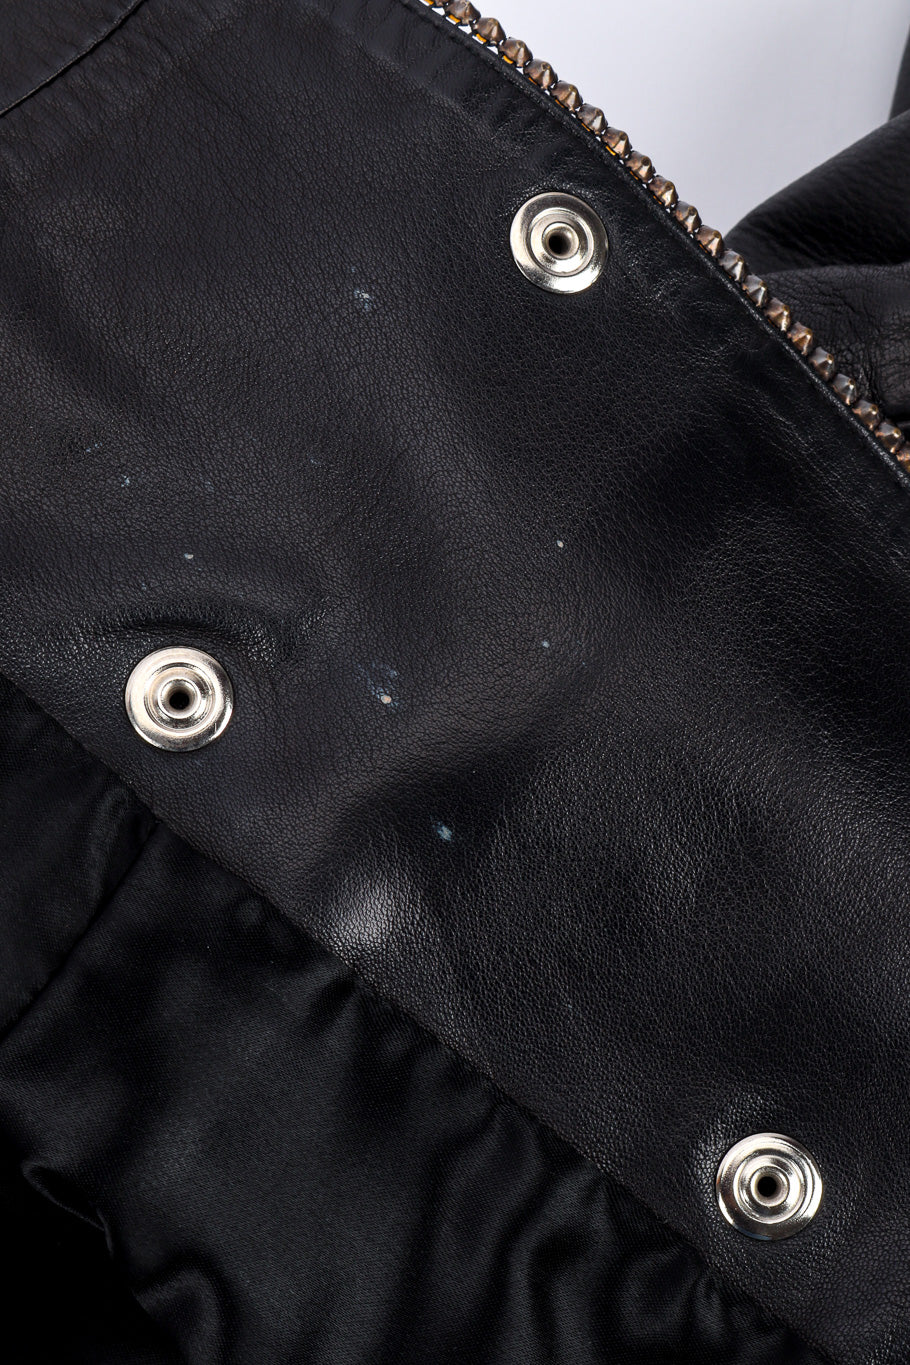 Vintage Charles Jourdan Leather Rhinestone Jacket spotting on leather @recessla